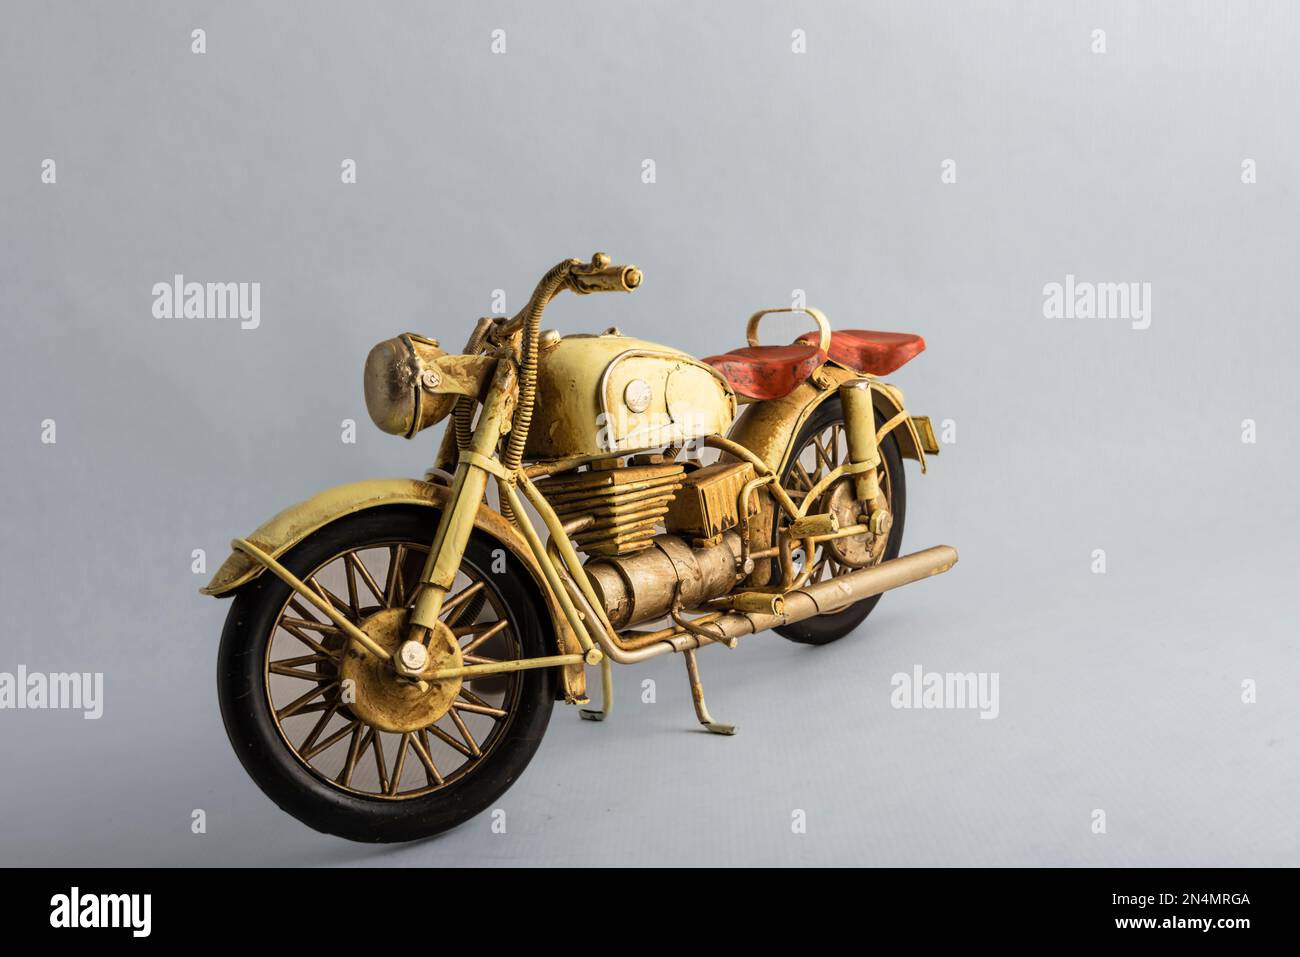 Moto-jouet à collectionner de couleur or avec siège marron Photo